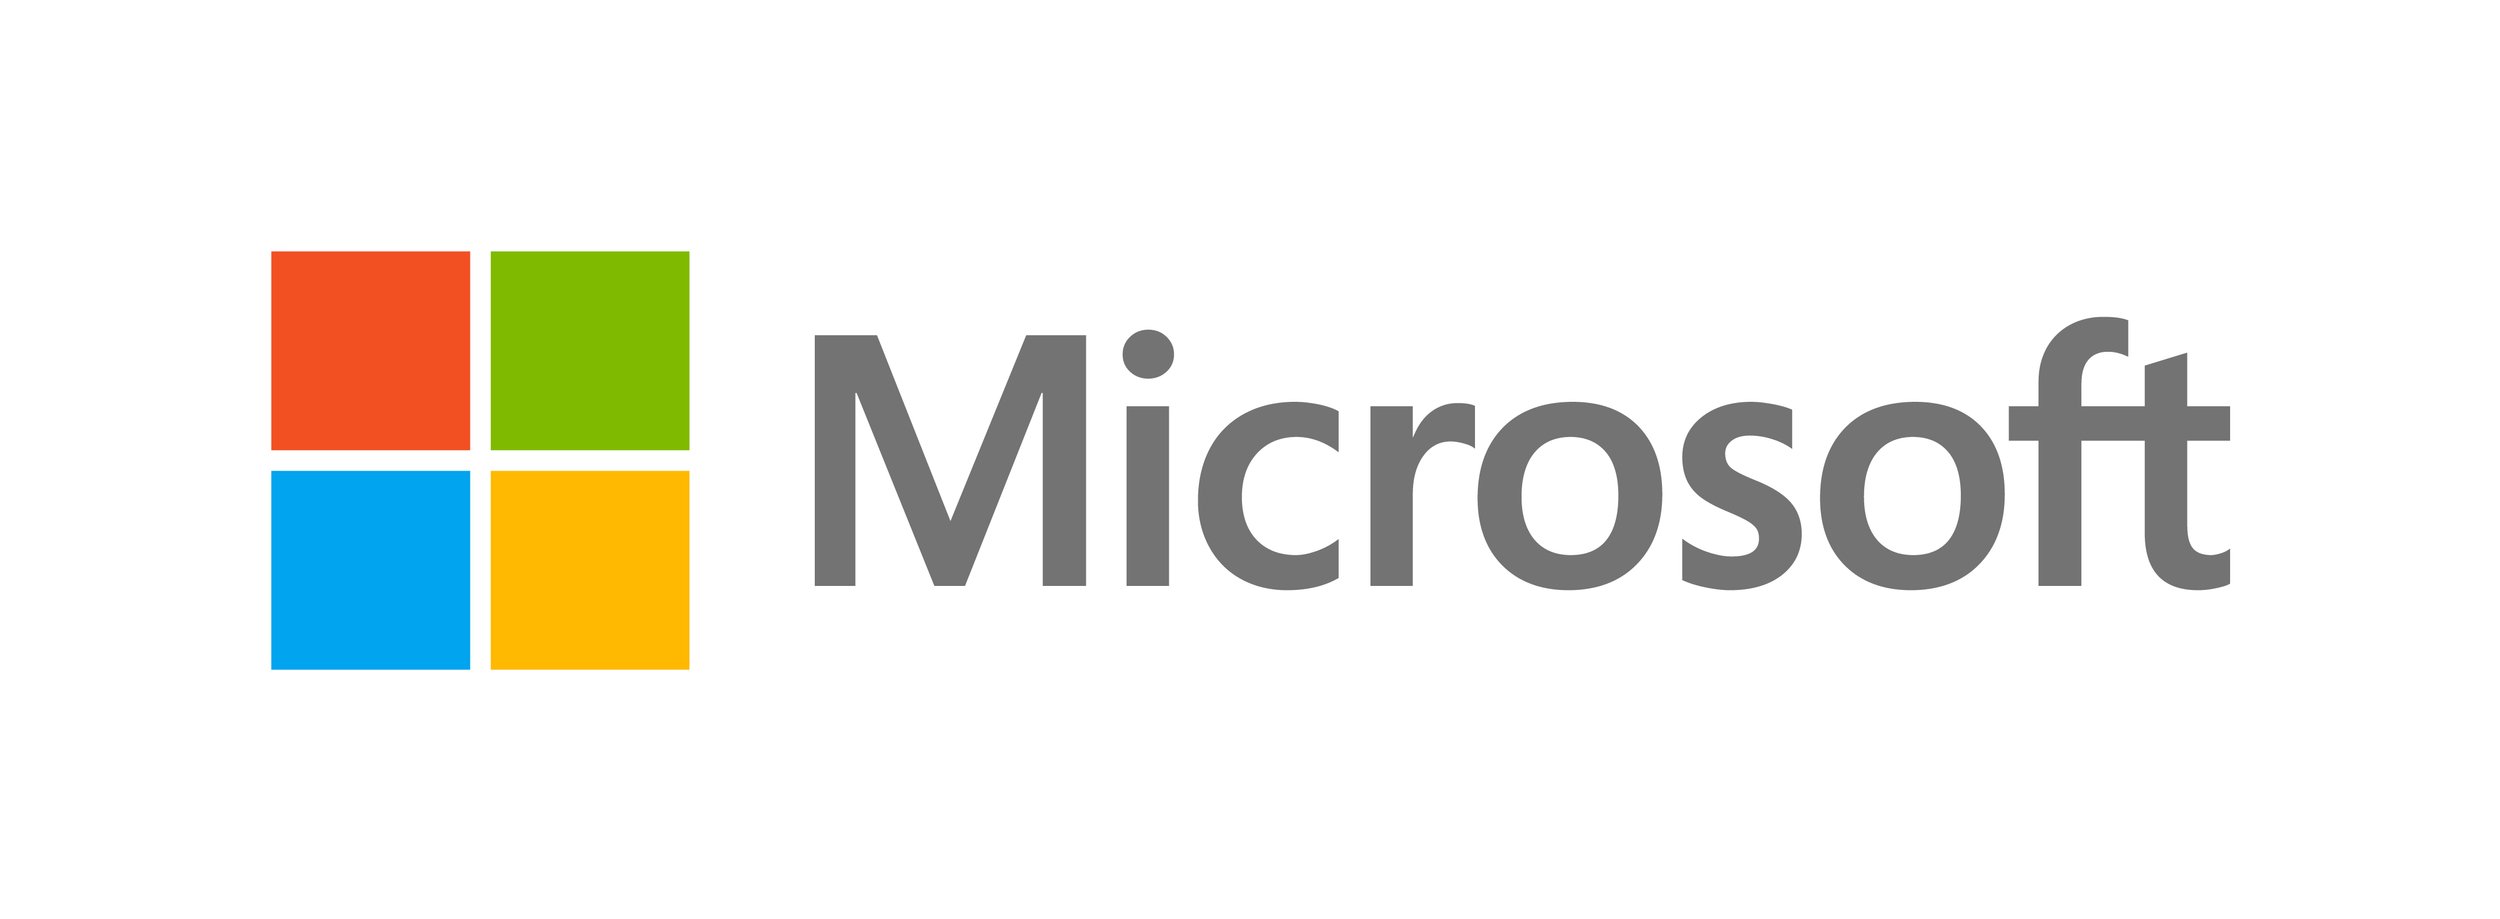 8867.Microsoft_5F00_Logo_2D00_for_2D00_screen.jpeg